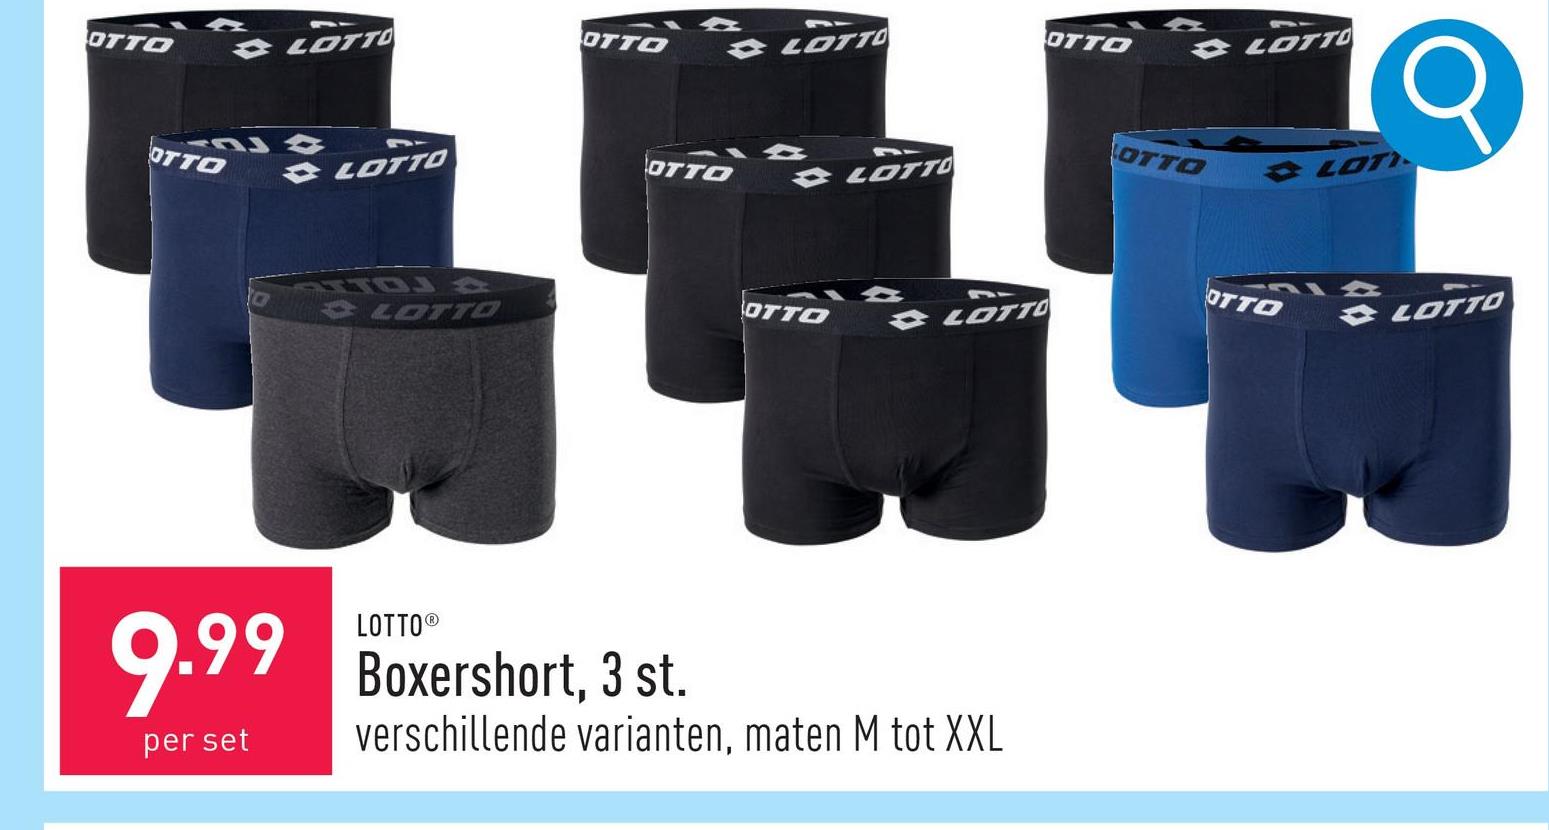 Boxershort, 3 st. katoen/elastaan, keuze uit verschillende varianten, maten M tot XXL, OEKO-TEX®-gecertificeerd